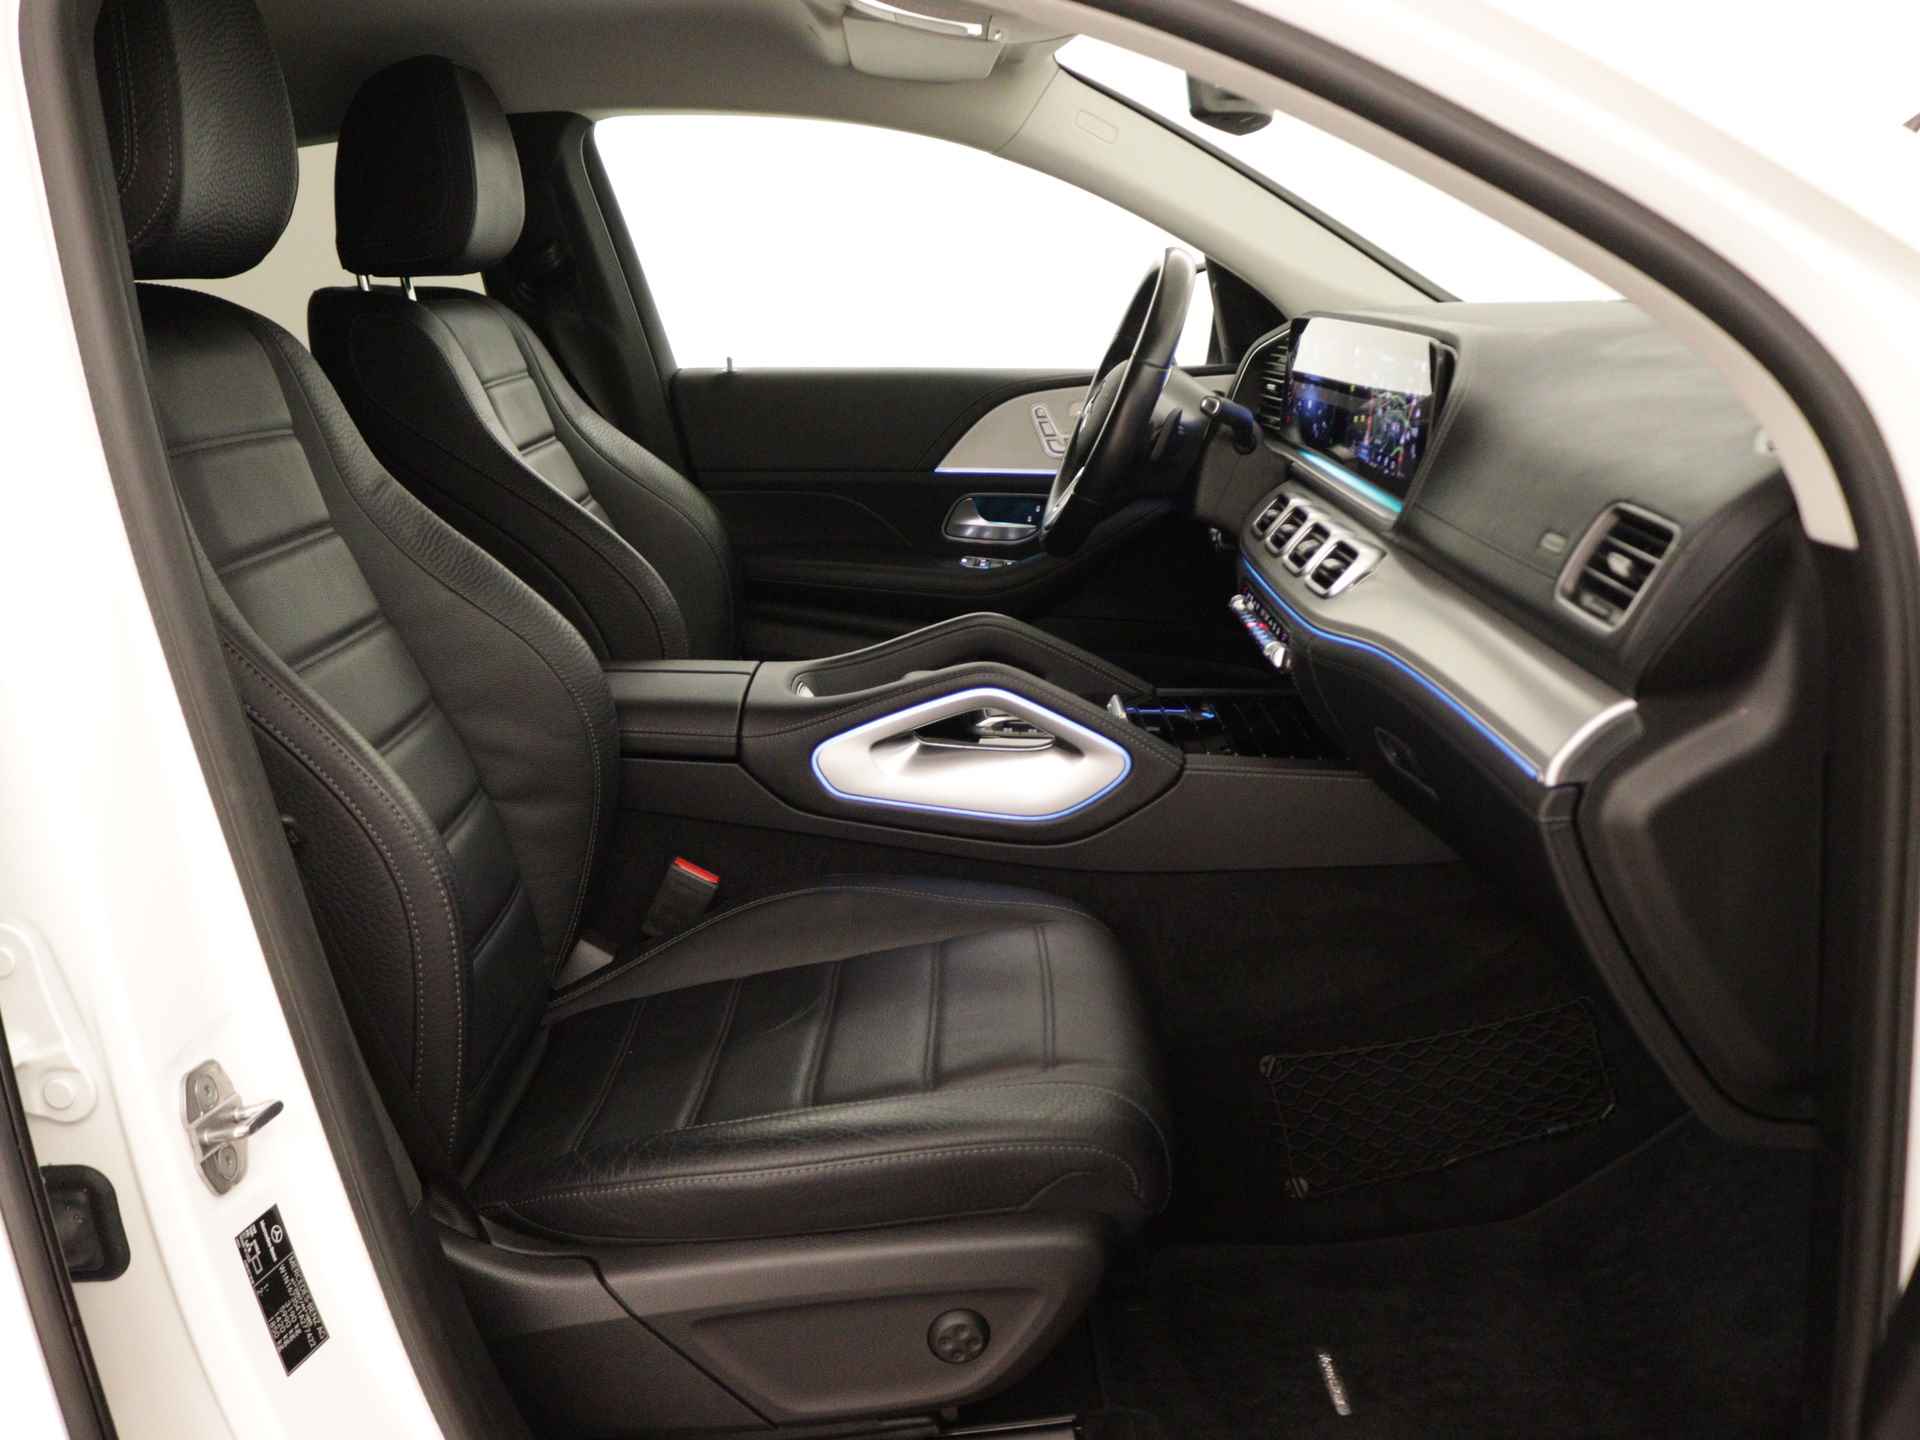 Mercedes-Benz GLE 350 e 4-MATIC AMG Nightpakket Limited 5 spaaks lichtmetalen velgen | Trekhaak | Airmatic | Treeplanken | Alarm klasse 3 |  Augmented Reality | sfeerverlichting | DAB | Parking support | inclusief 24 maanden MB Certified garantie voor europa - 30/45